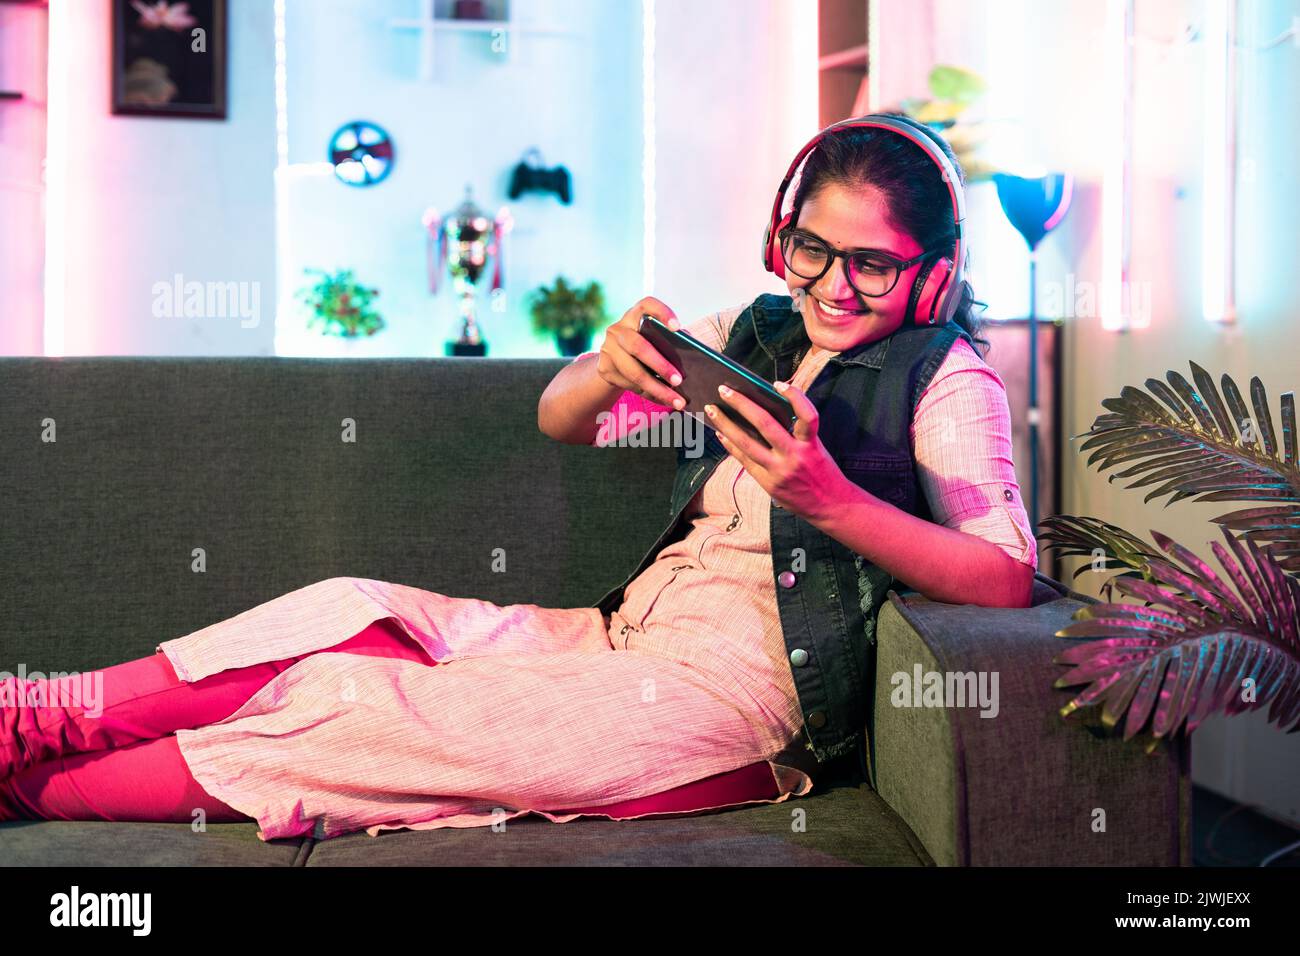 Aufgeregt Mädchen spielen Videospiel auf dem Mobiltelefon mit schnurlosem Headset, während auf dem Sofa zu Hause sitzen - Konzept der Entspannung, Hobby und Unterhaltung. Stockfoto